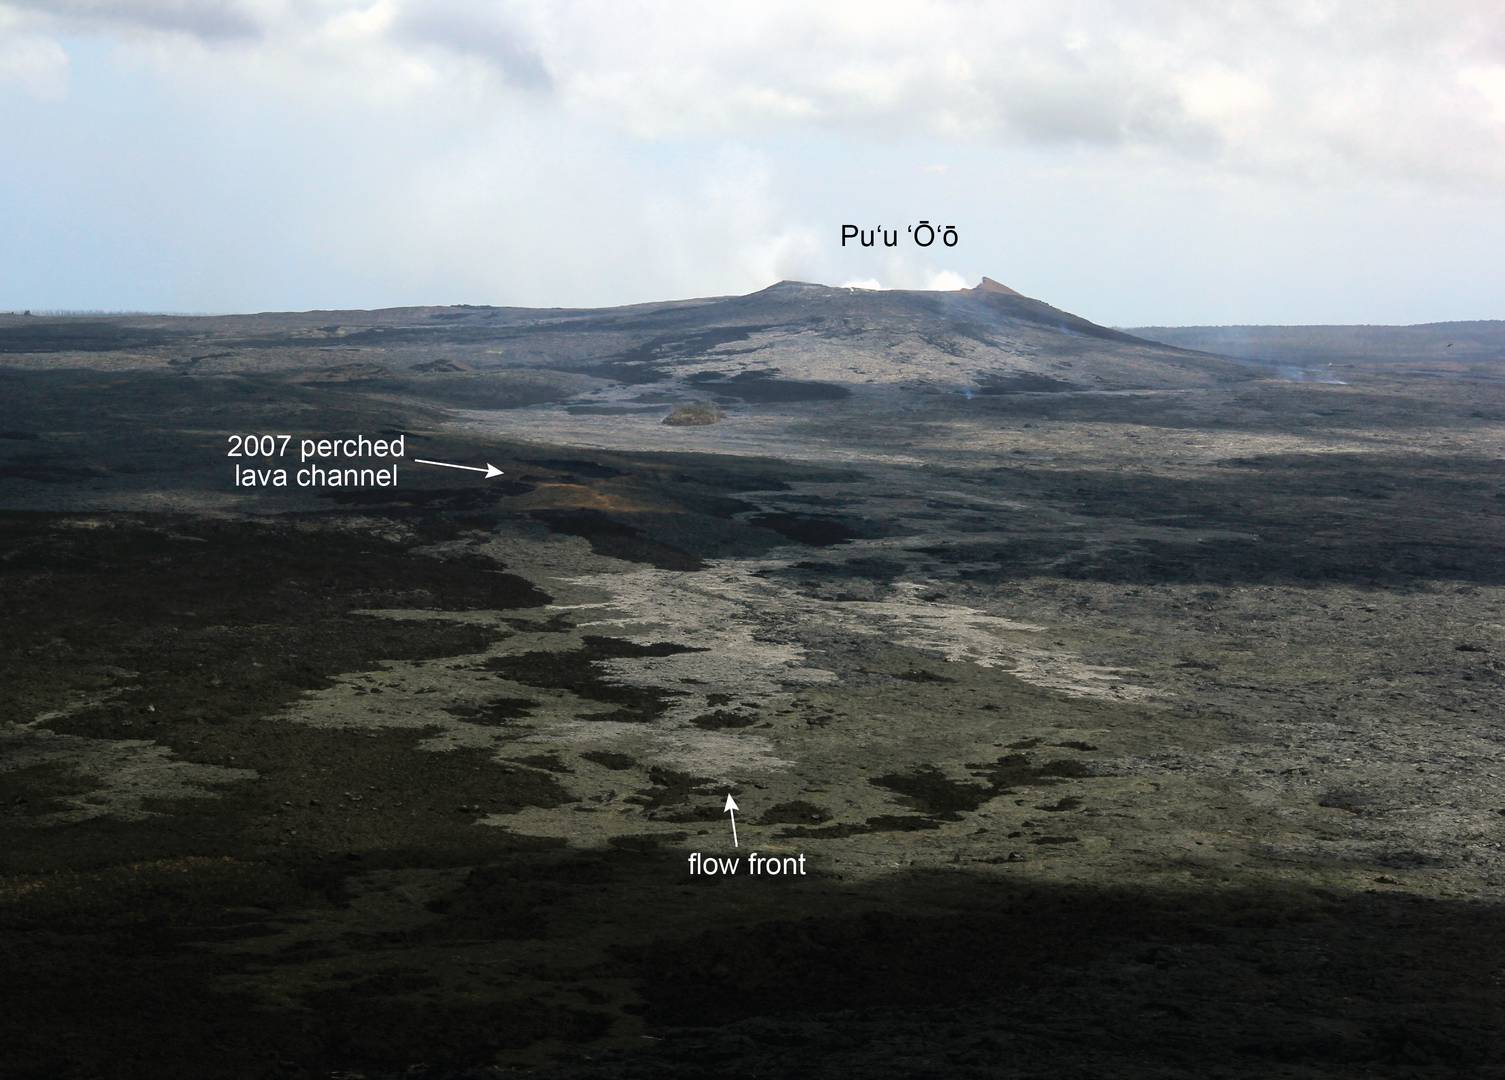 Volcanic activity worldwide 30 Jul 2014: Kilauea